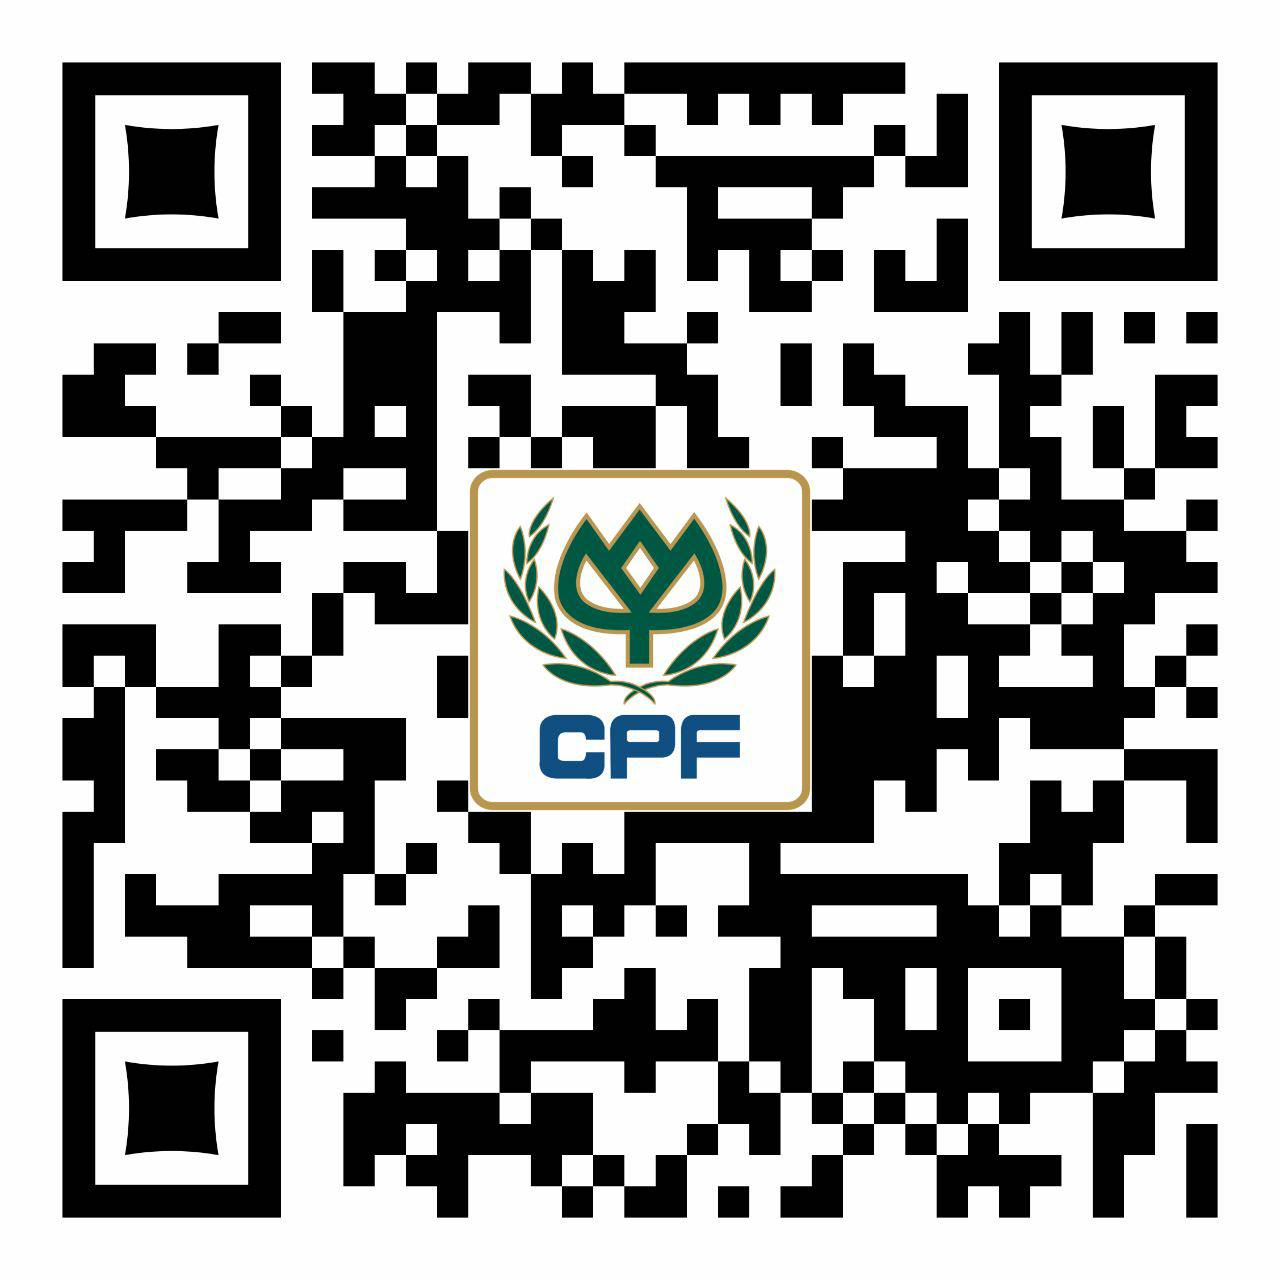 CP Cambodia Facebook QR Code